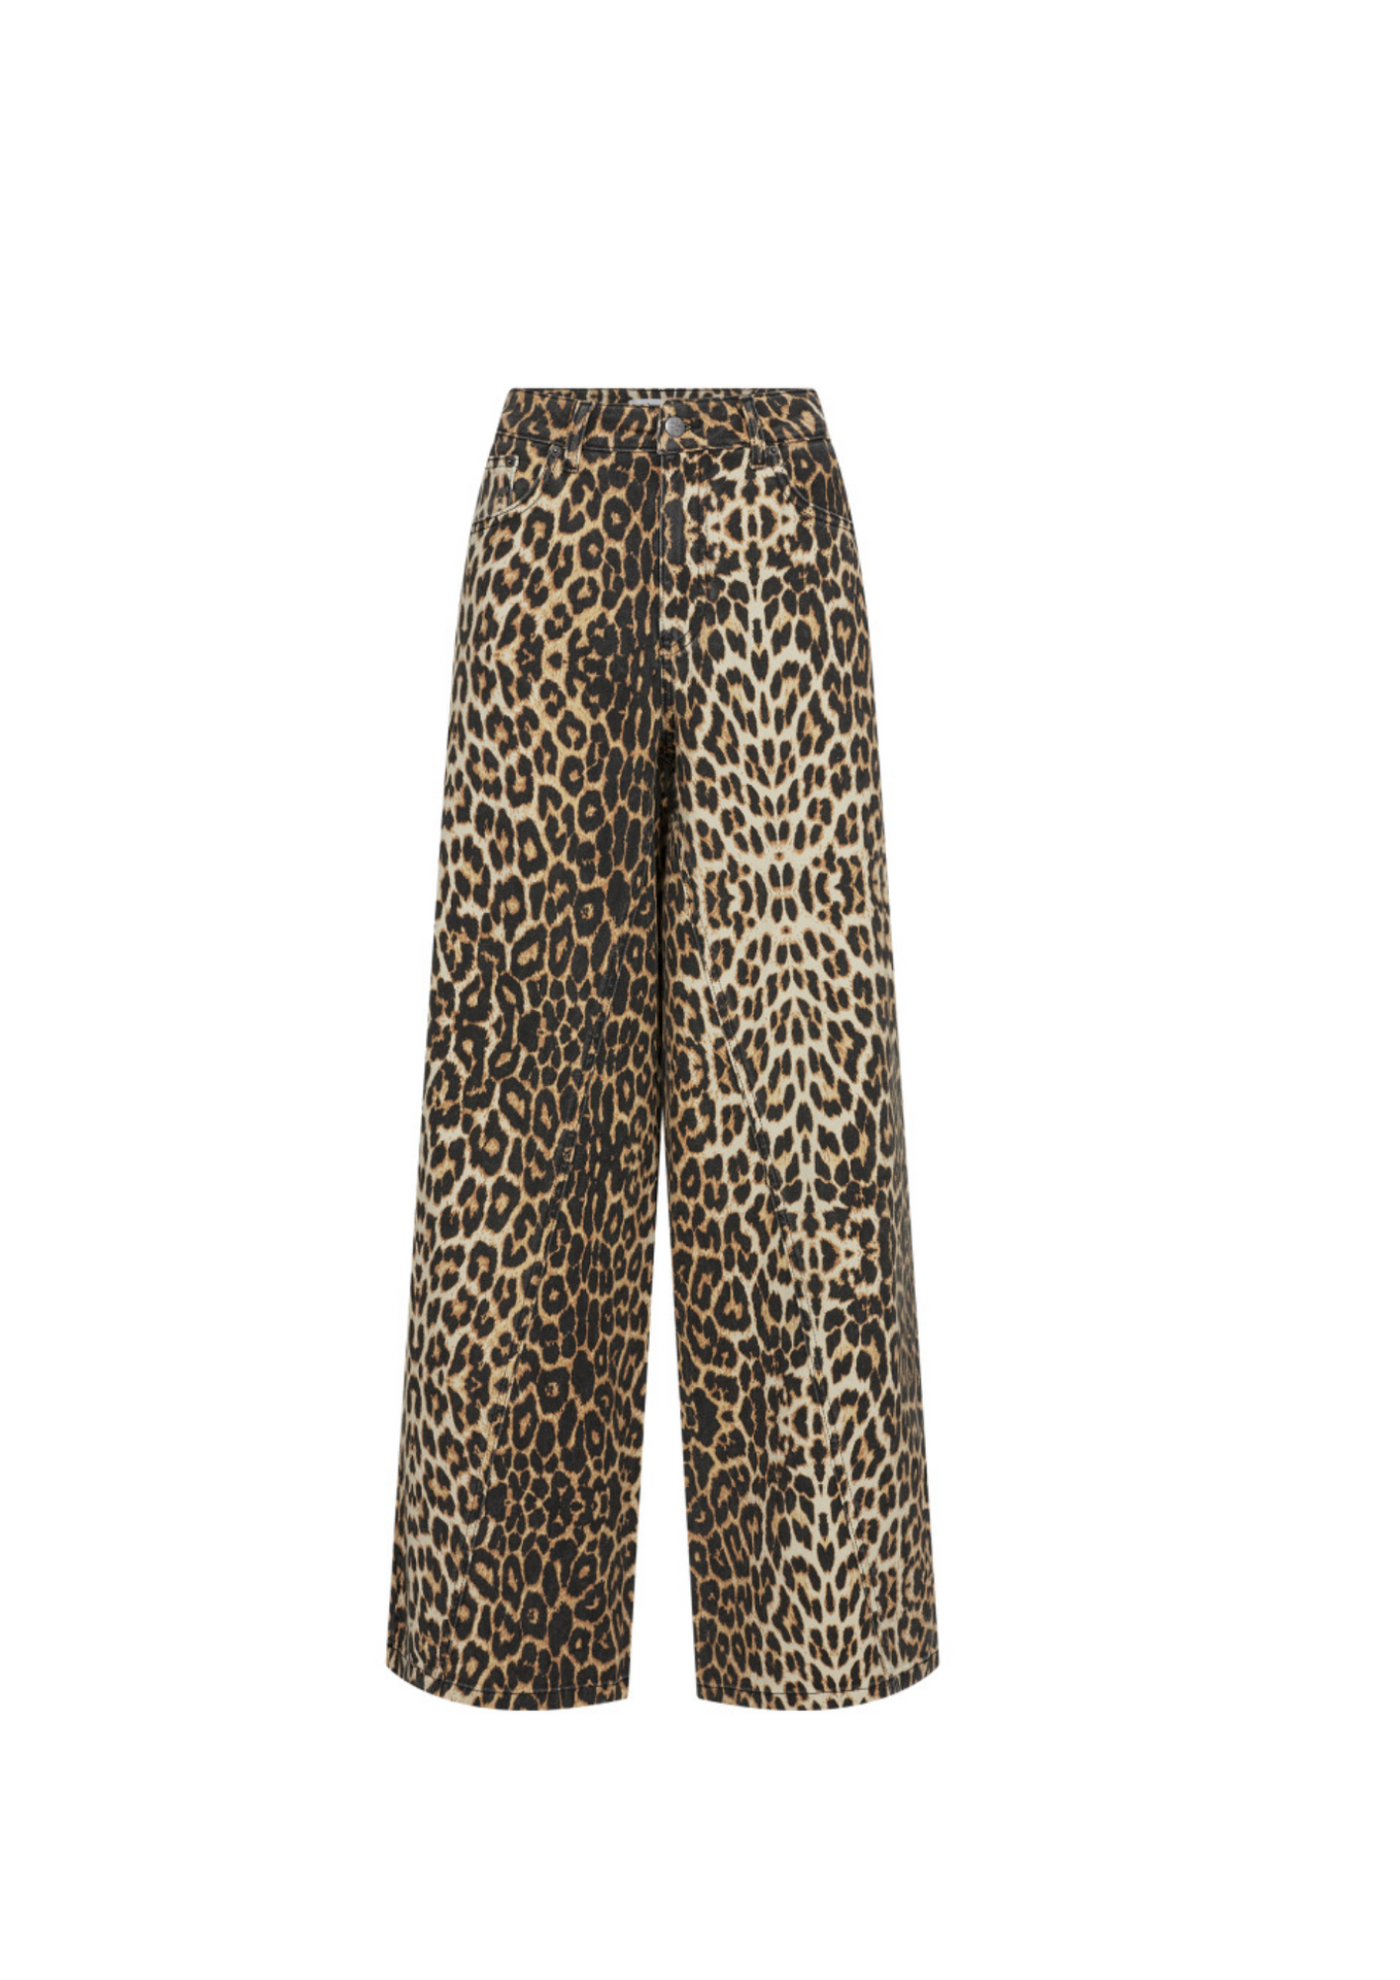 Co' Couture | LeoCC Denim Panel Pants Khaki lengte tot 1.75cm